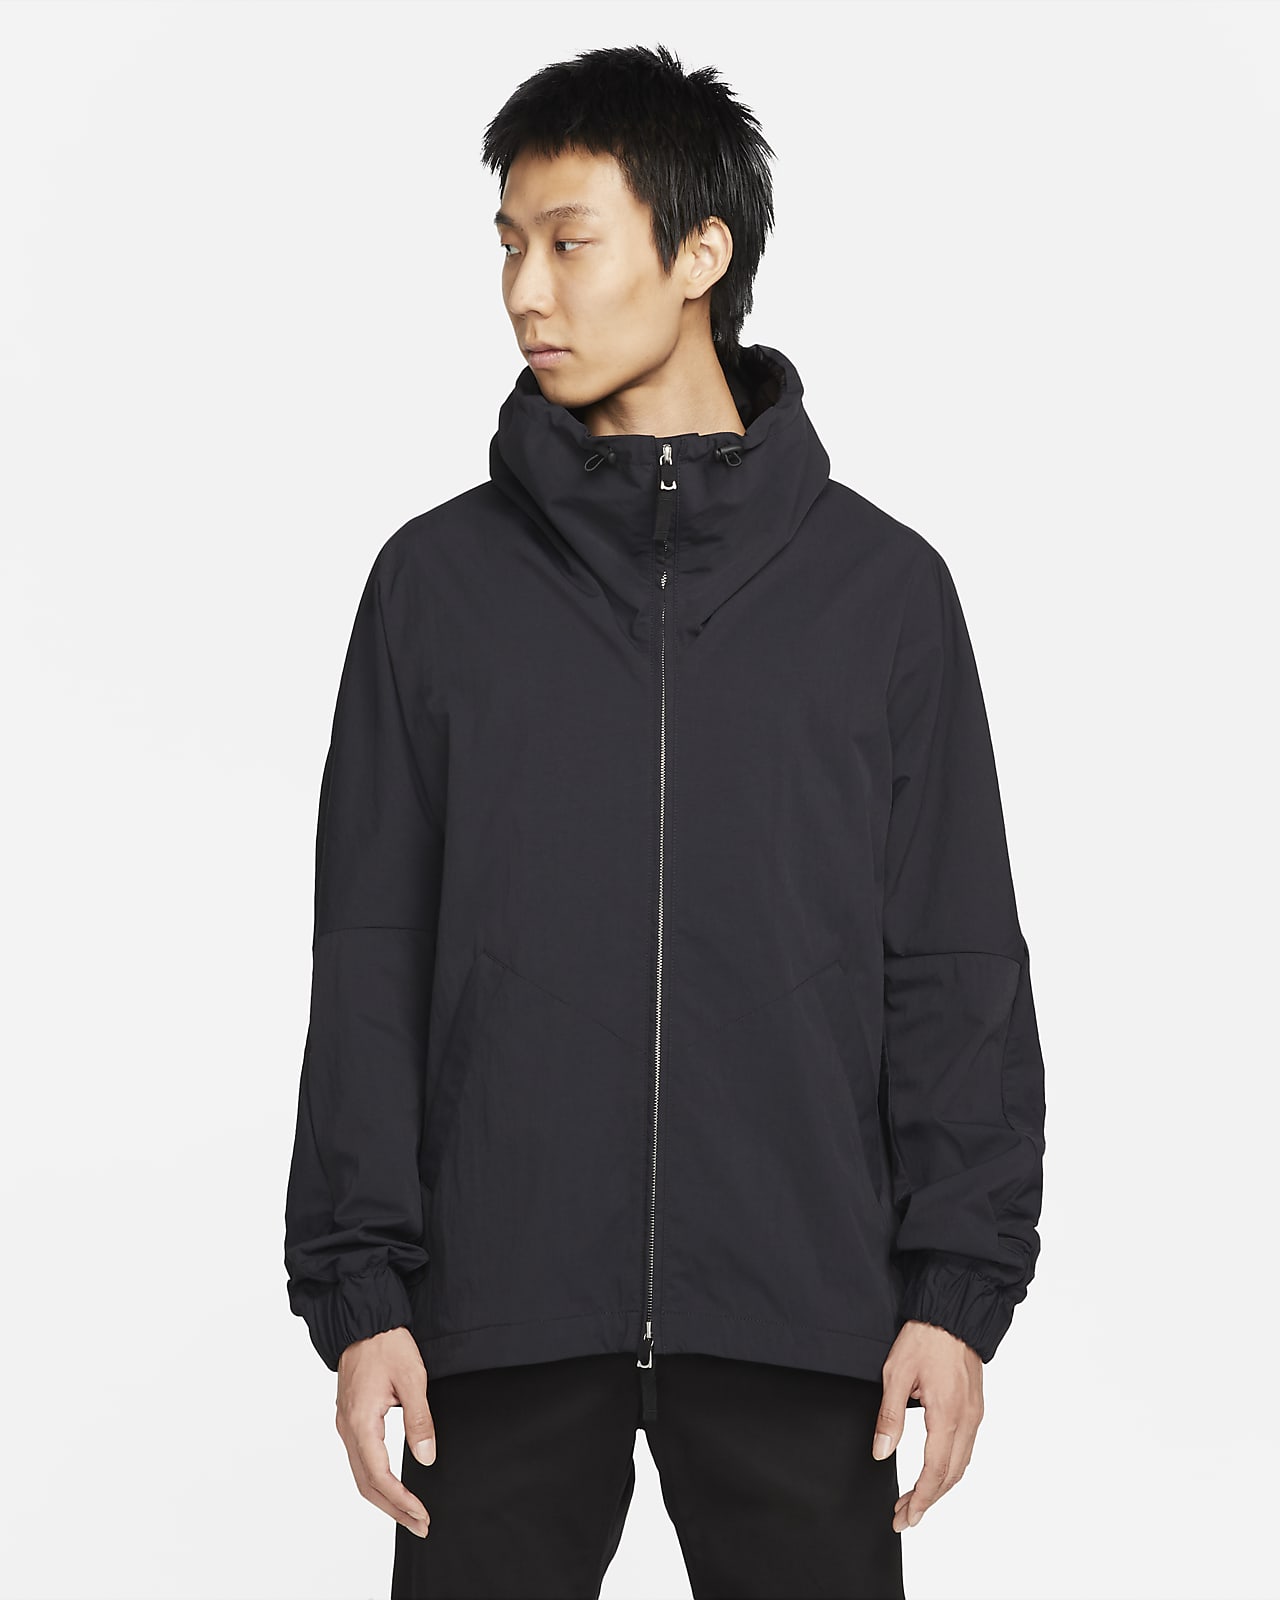 Nike ESC Men's Woven Jacket